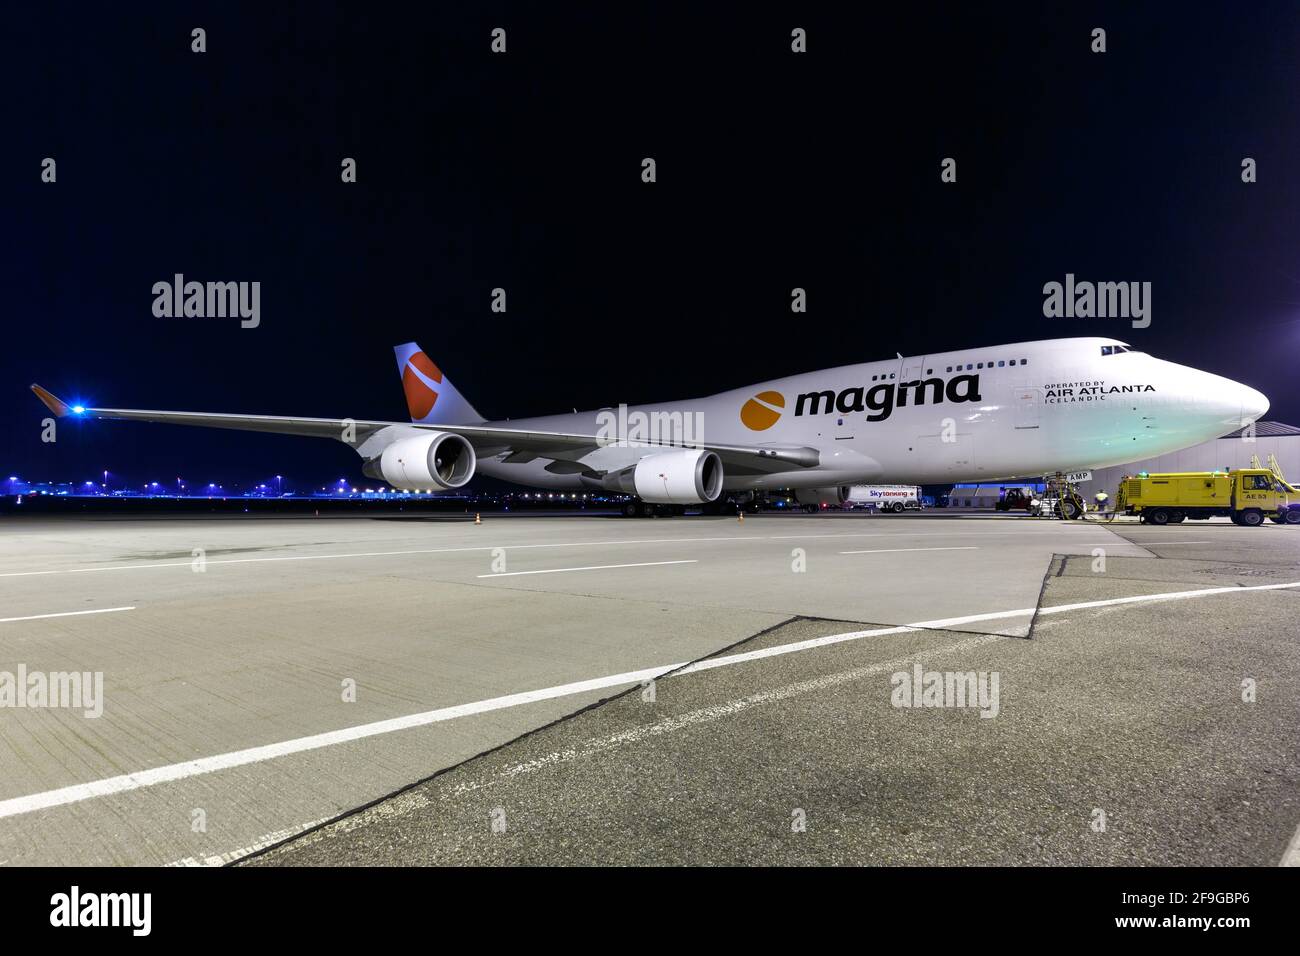 Stuttgart, Alemania - 7 de febrero de 2018: Avión Magma 747-400BCF de Air Atlanta Islandés en el aeropuerto de Stuttgart (STR) en Alemania. Boeing es un airc Foto de stock